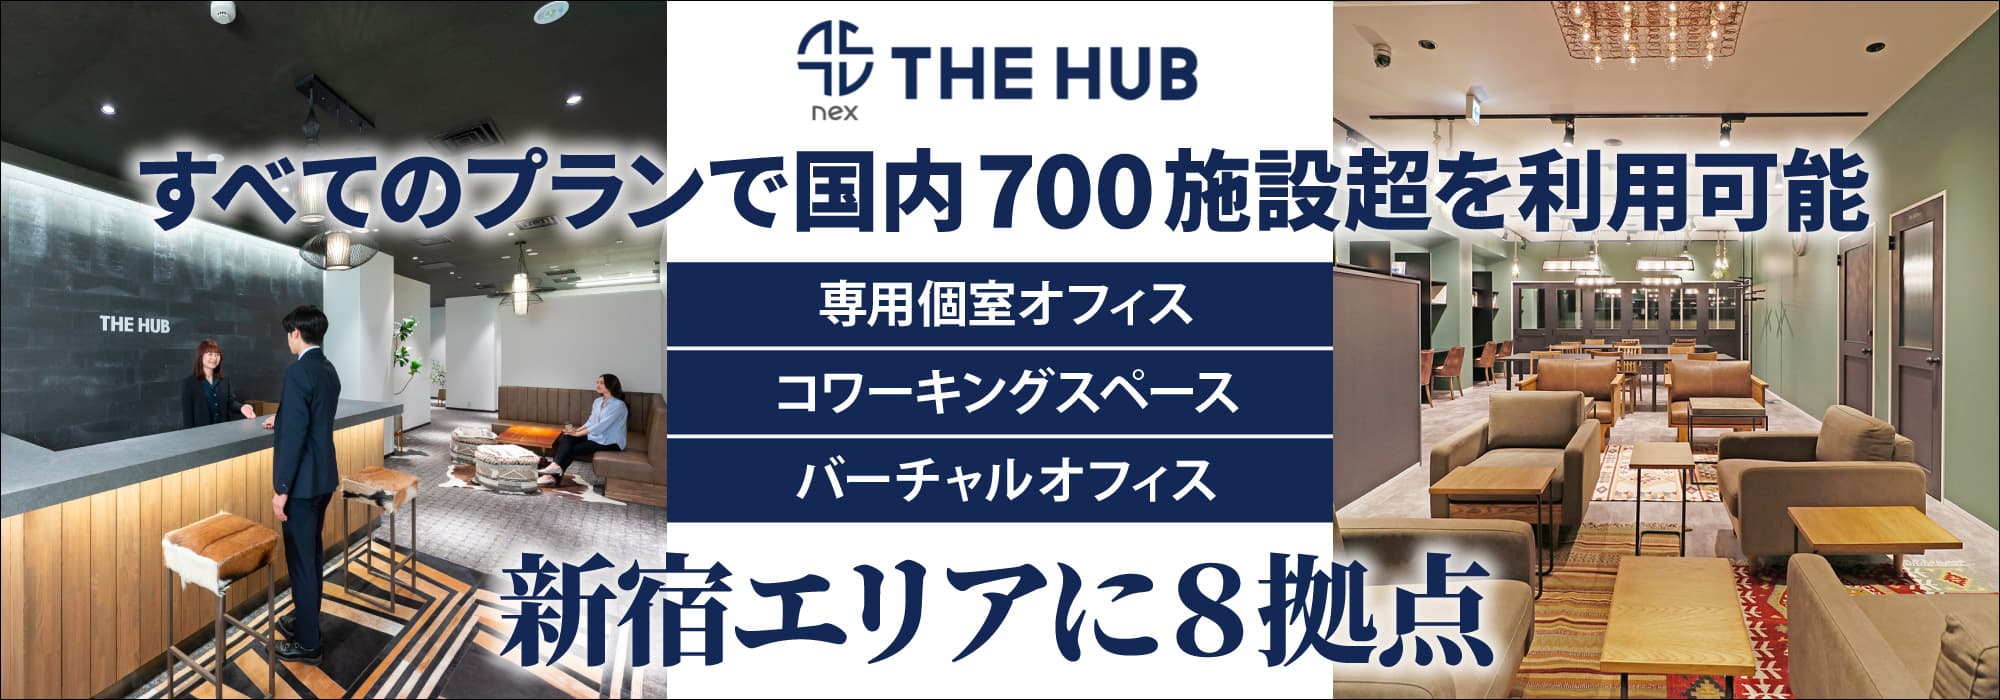 新宿エリアに６拠点、創造力と生産性を刺激するレンタルオフィス【THE HUB】すべてのプランで国内700施設超を利用可能